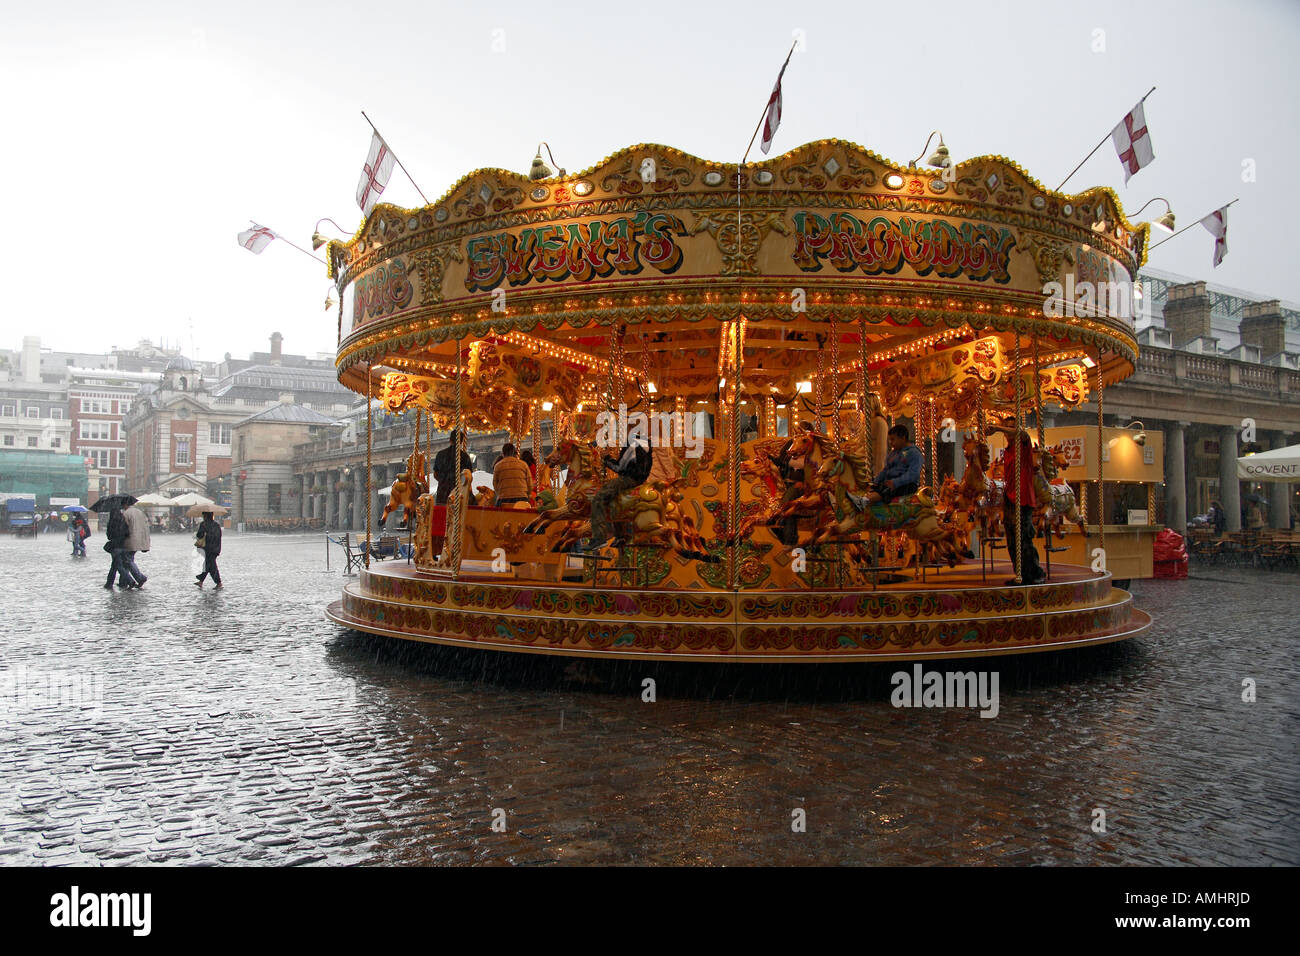 Carrousel dans la pluie. Covent Garden Plaza, Londres, Angleterre Banque D'Images